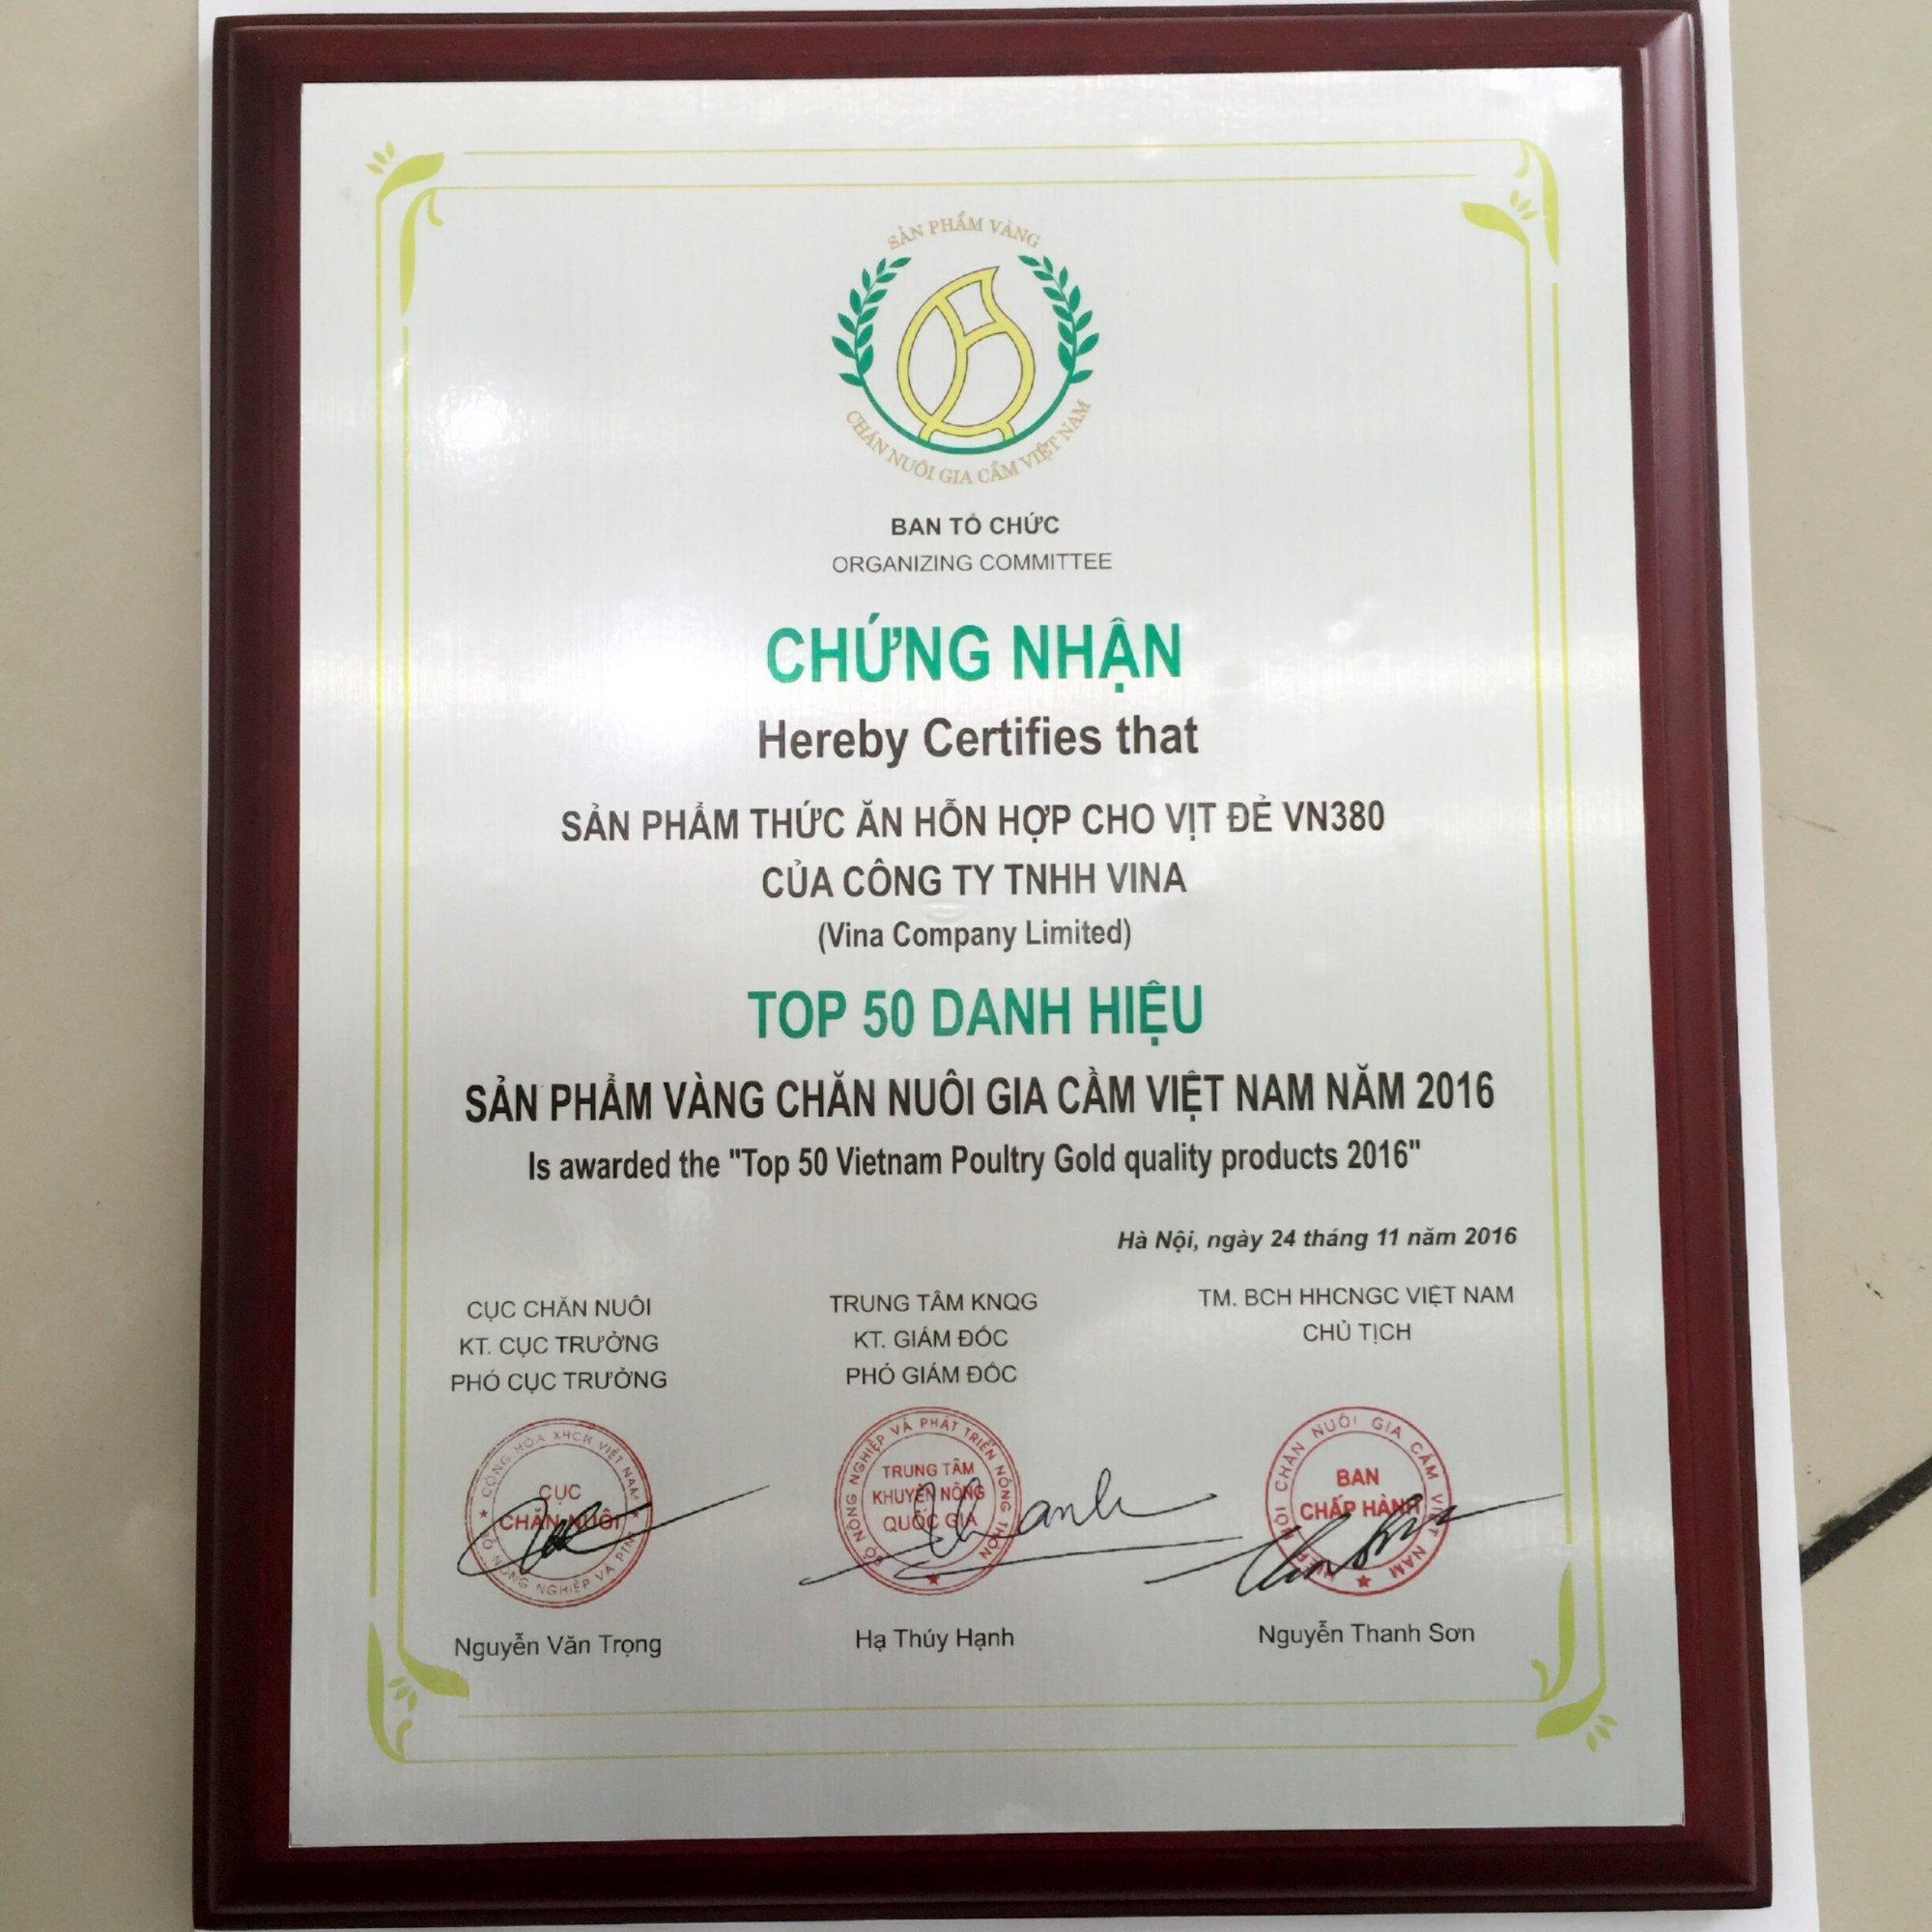 Công ty TNHH ViNa  đạt danh hiệu "Sản phẩm vàng chăn nuôi gia cầm Việt Nam 2016"